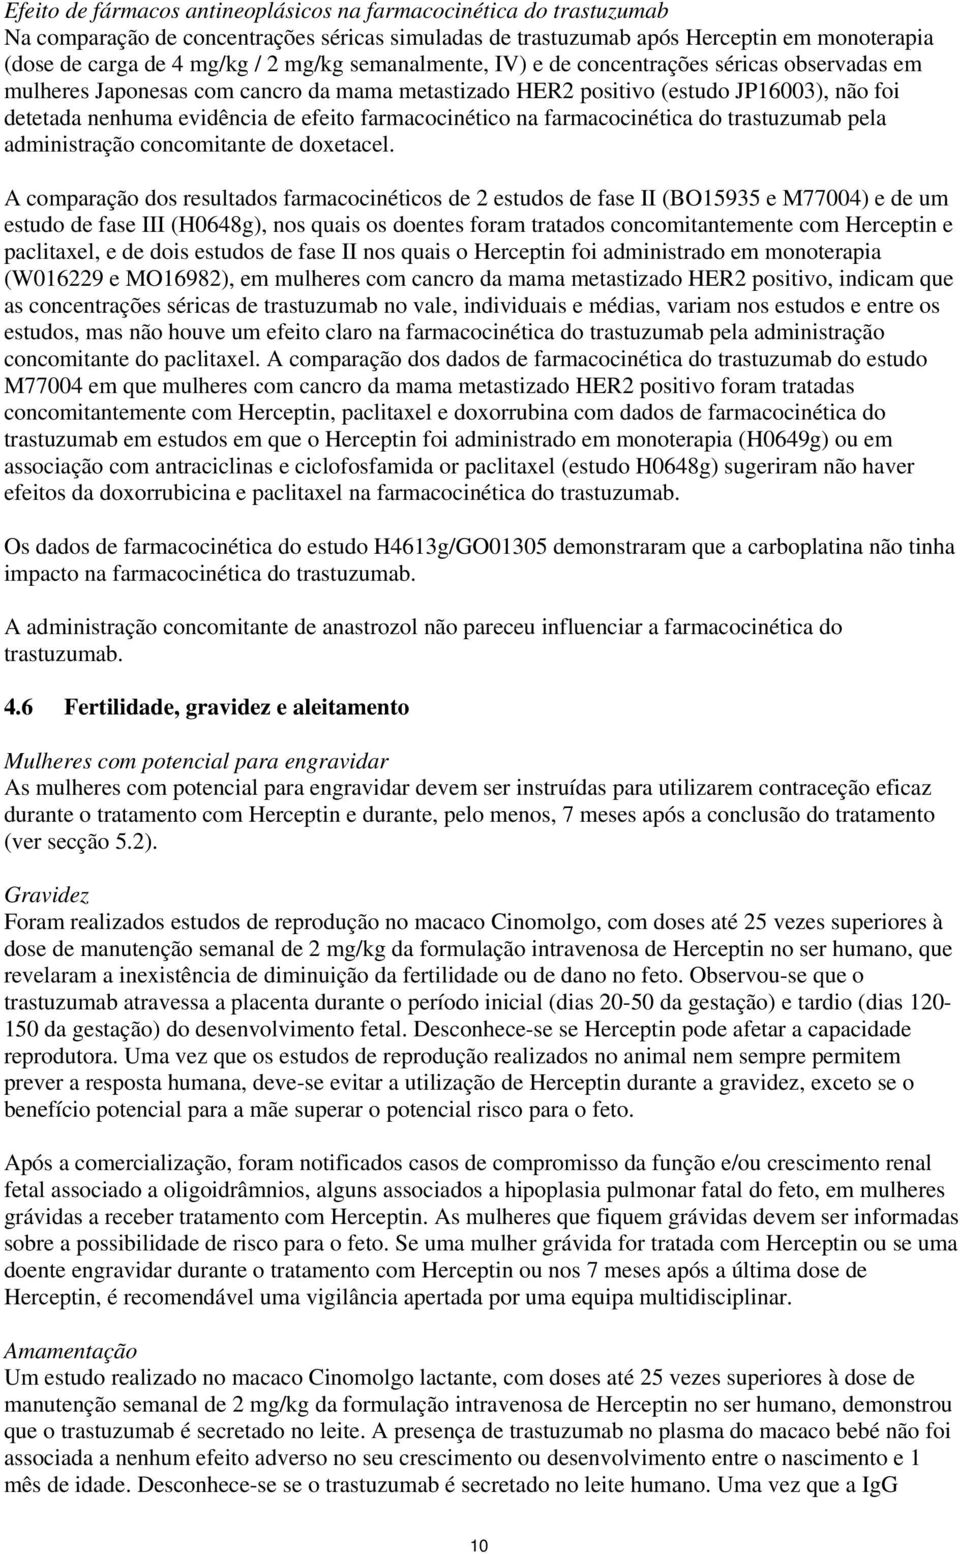 farmacocinético na farmacocinética do trastuzumab pela administração concomitante de doxetacel.